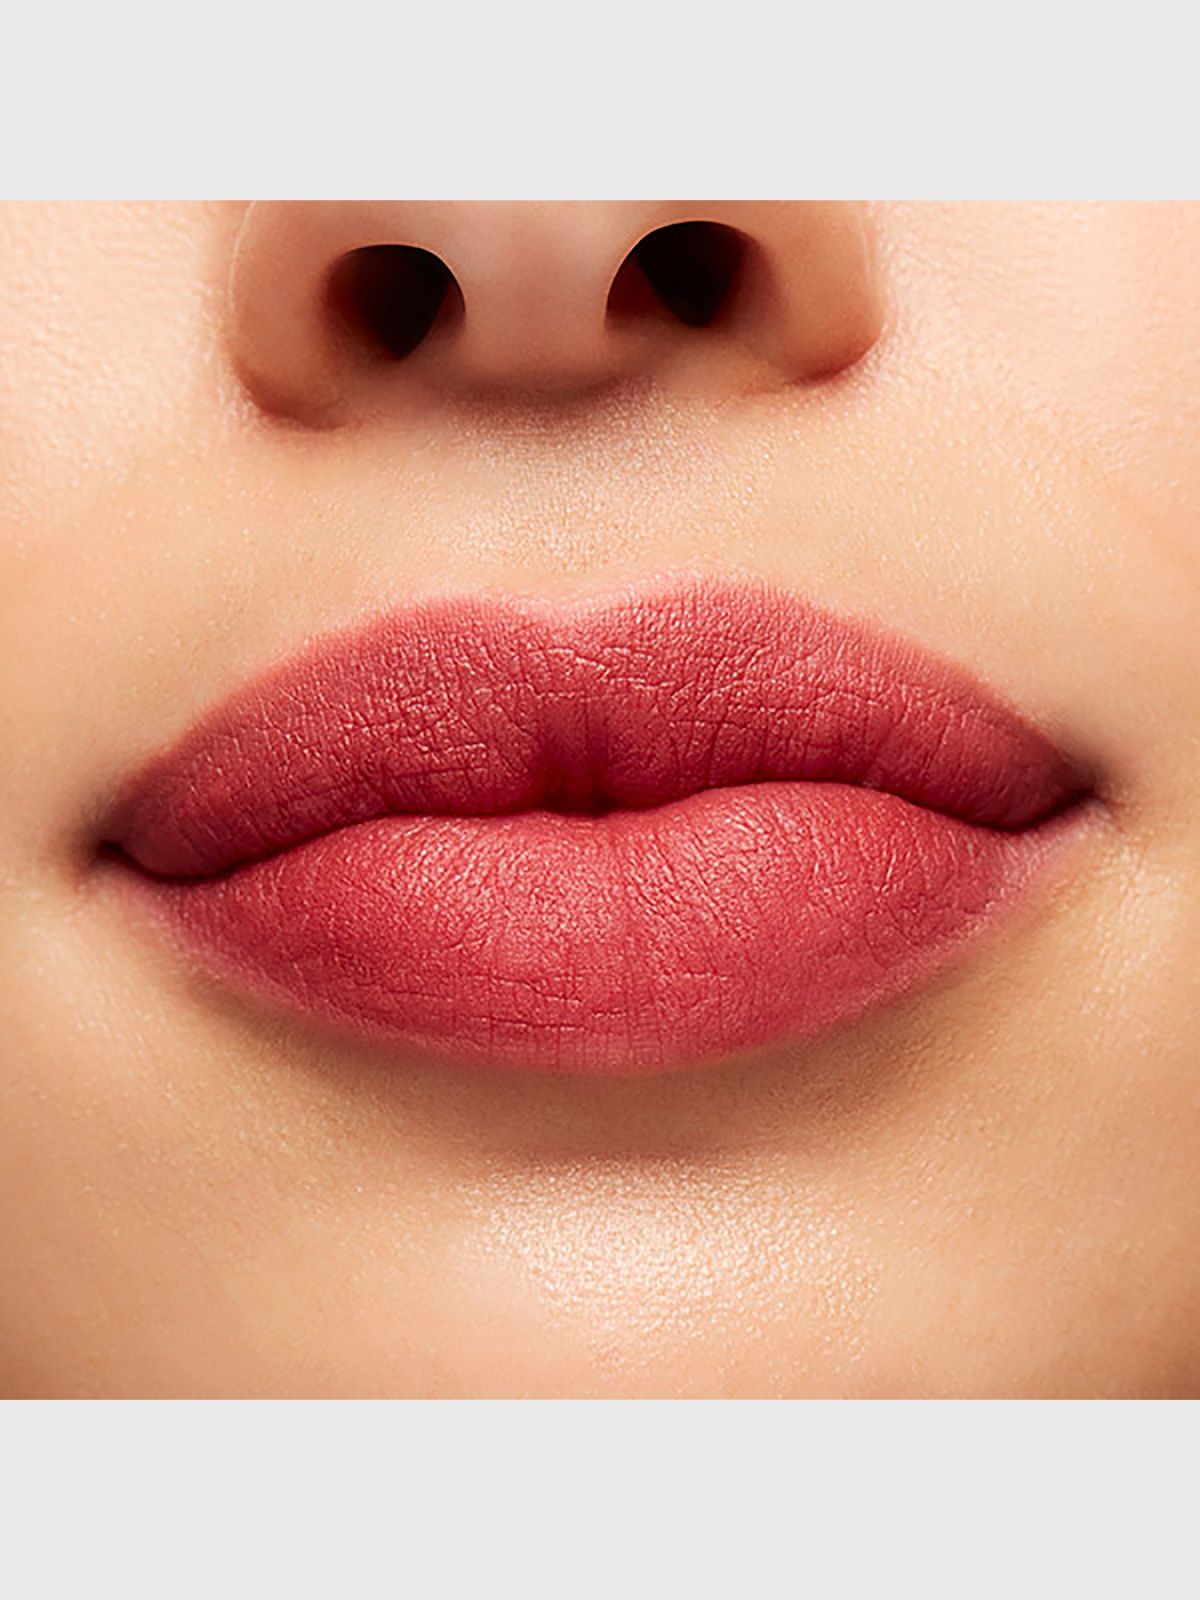  שפתון נוזלי POWDER KISS LIQUID LIPSTIC במהדורה מוגבלת של MAC